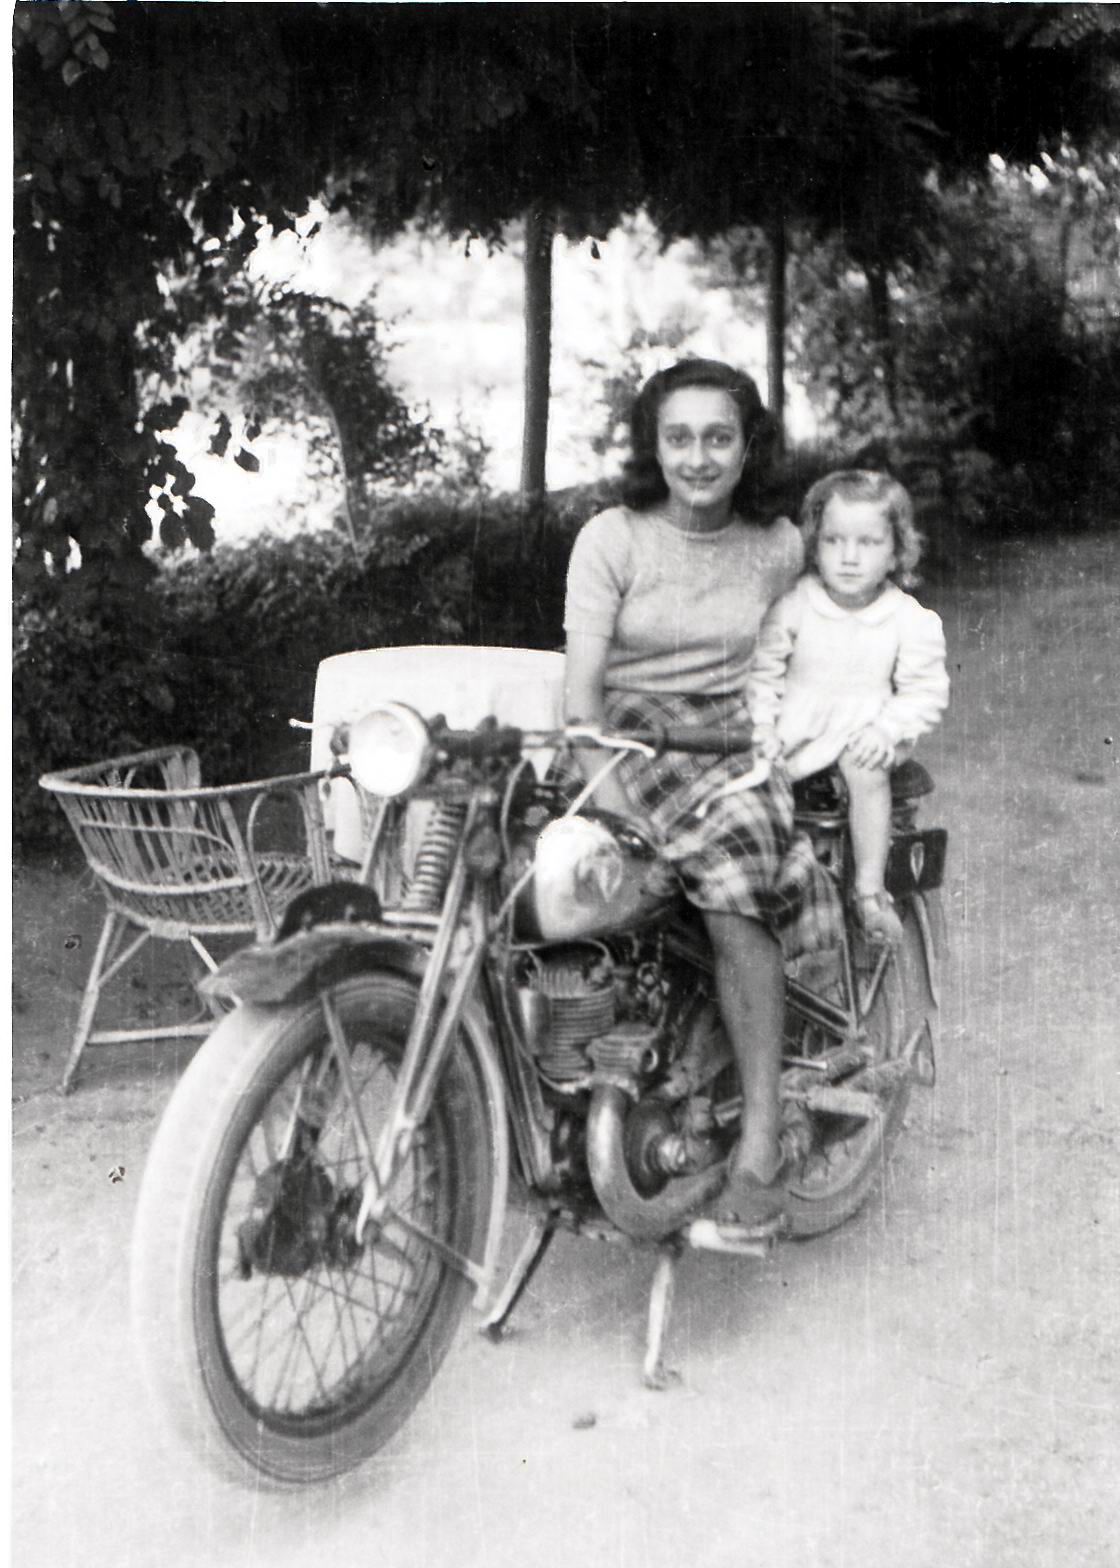 1956-madre-e-figlia-su-moto-carpi